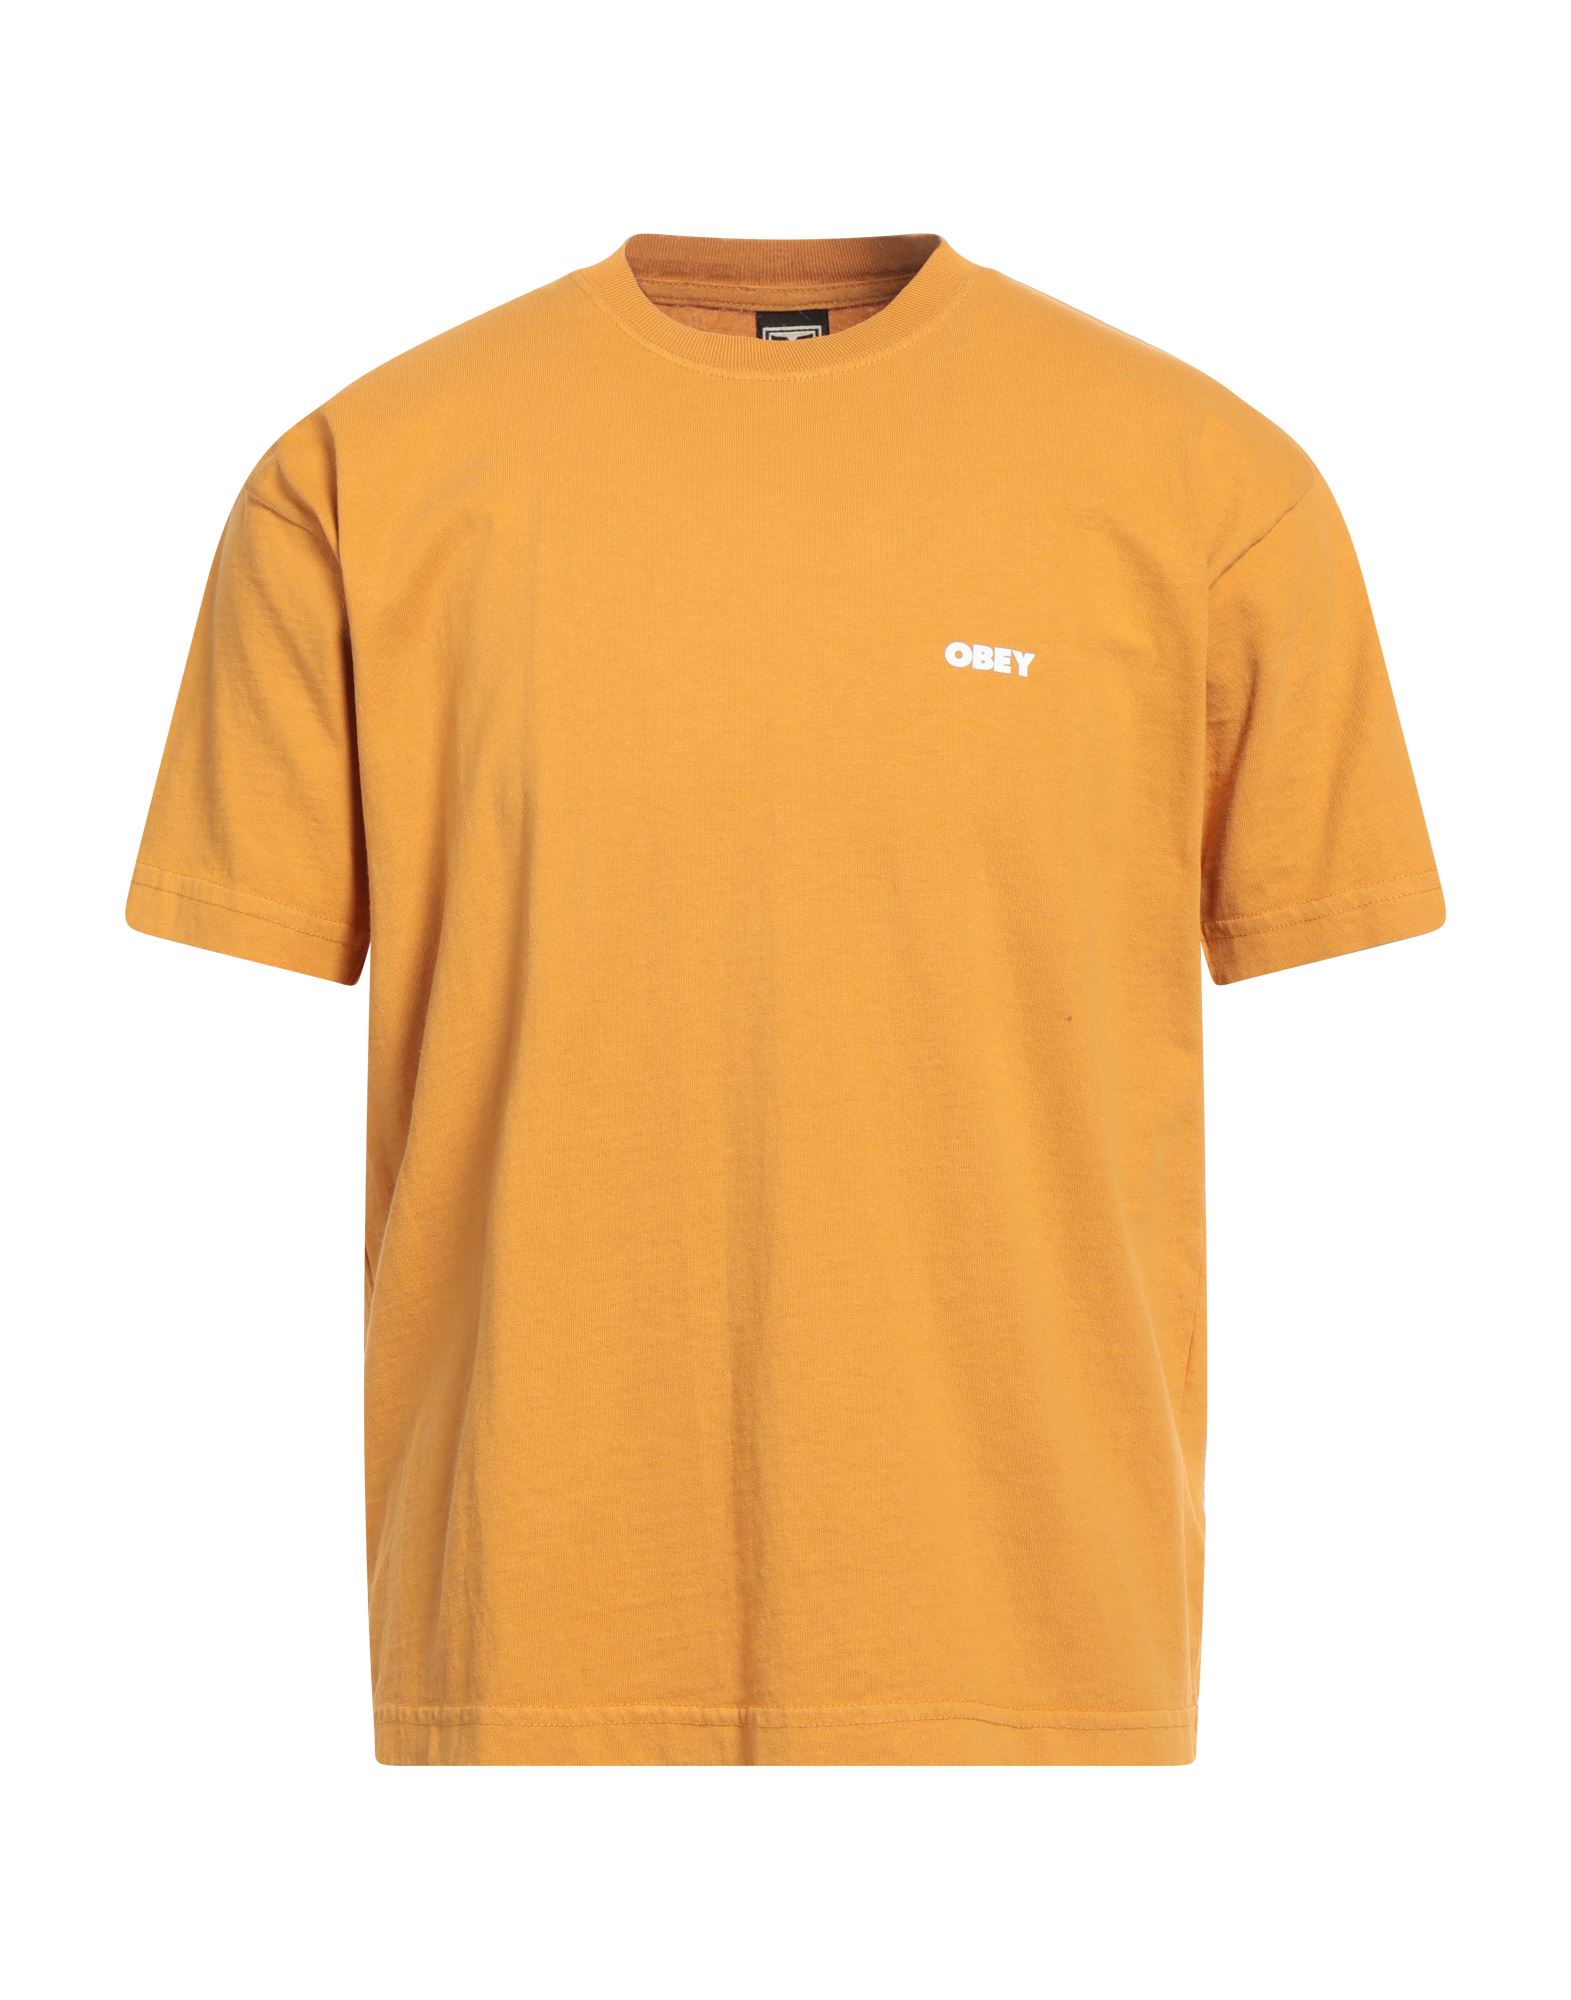 OBEY T-shirts Herren Mandarine von OBEY